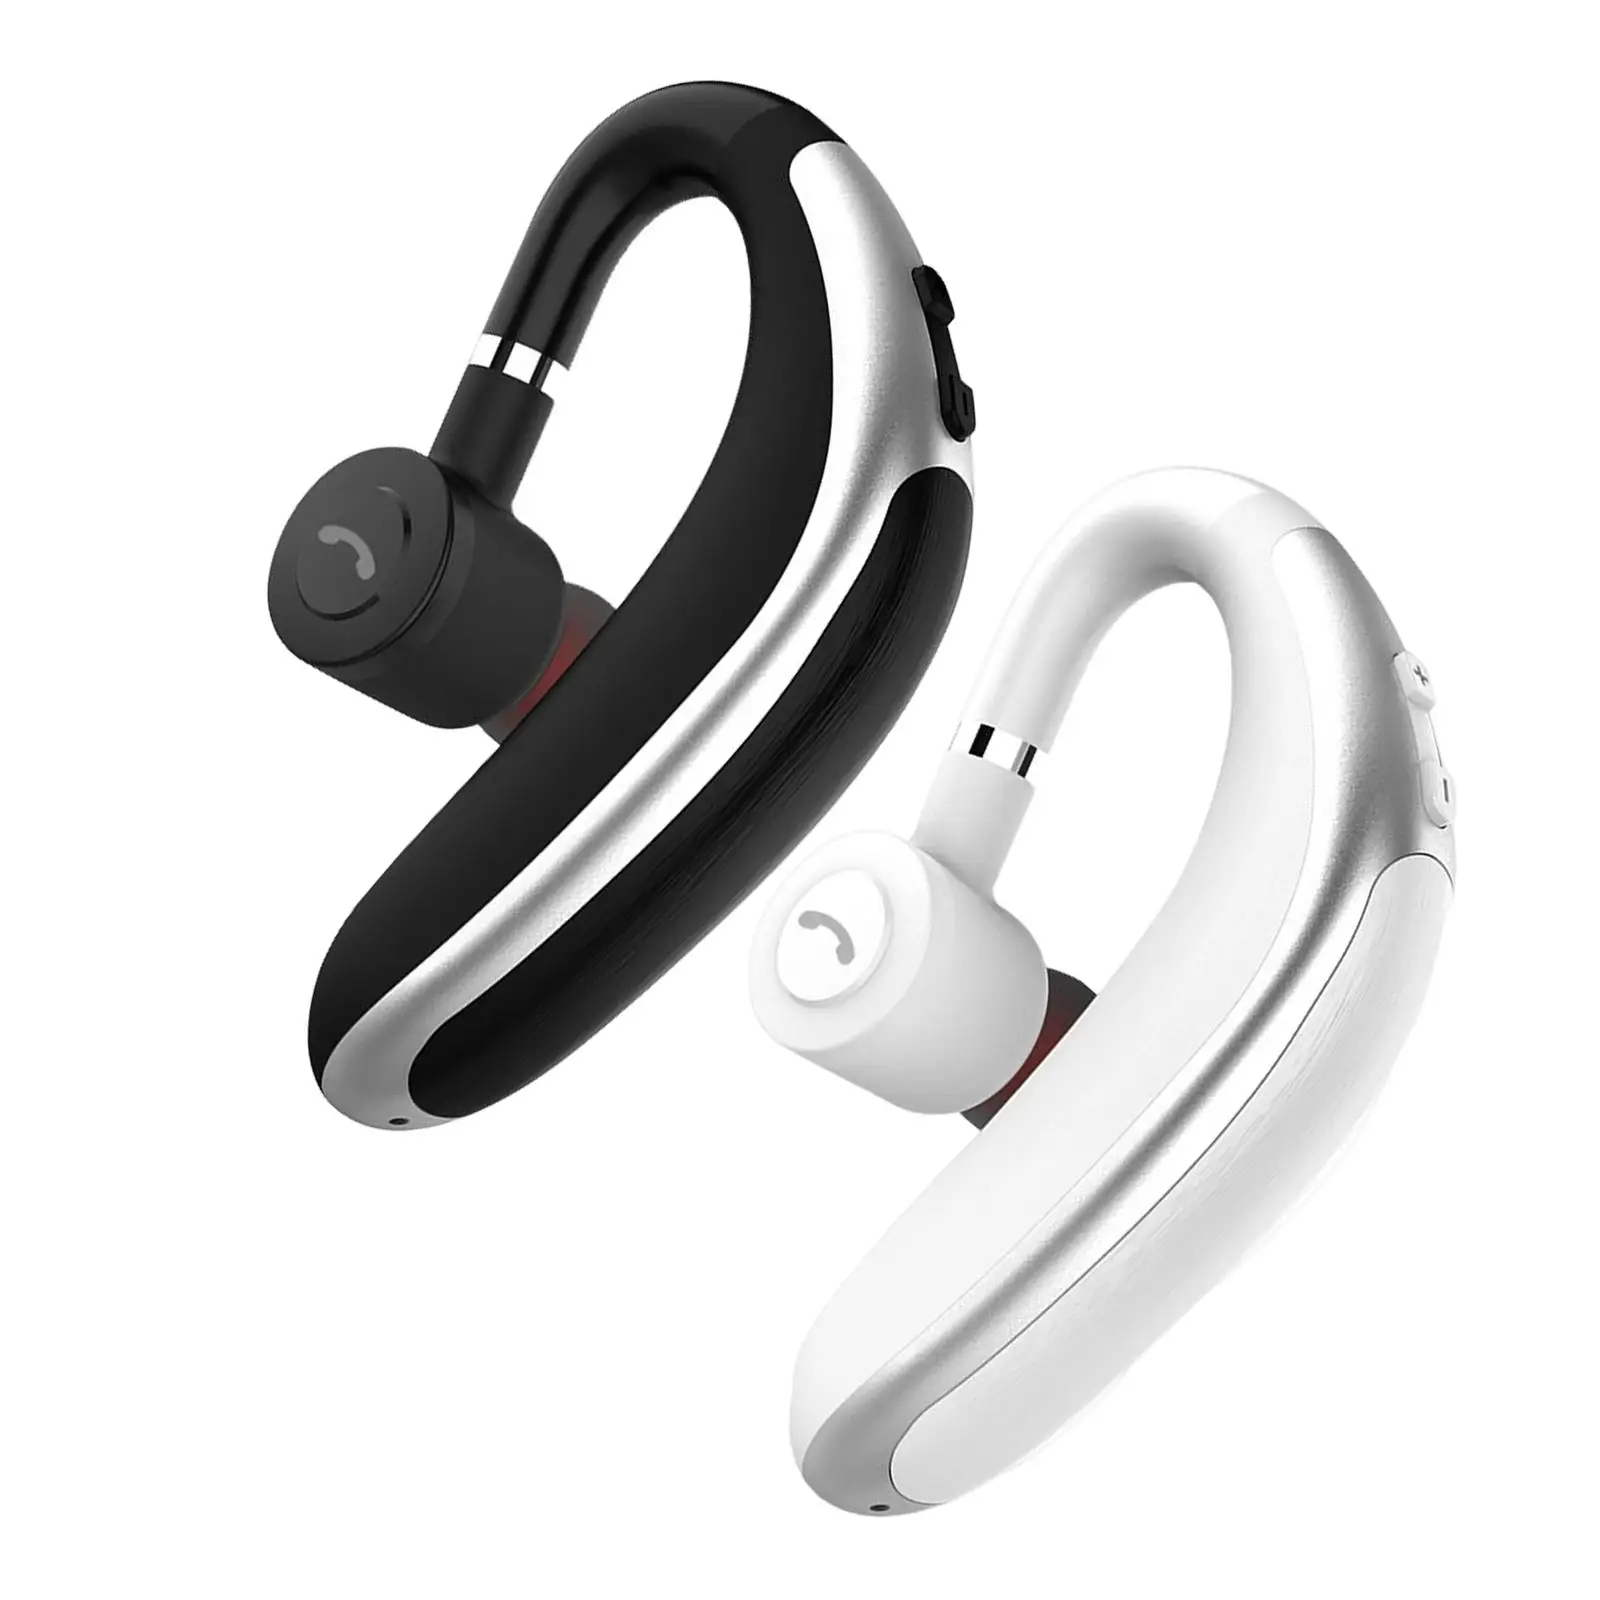 Single Ear Hook Bluetooth Headset Stereo Hands Free Portable Earphone in Ear Earbud Bluetooth Earpiece for Sports Driving Office